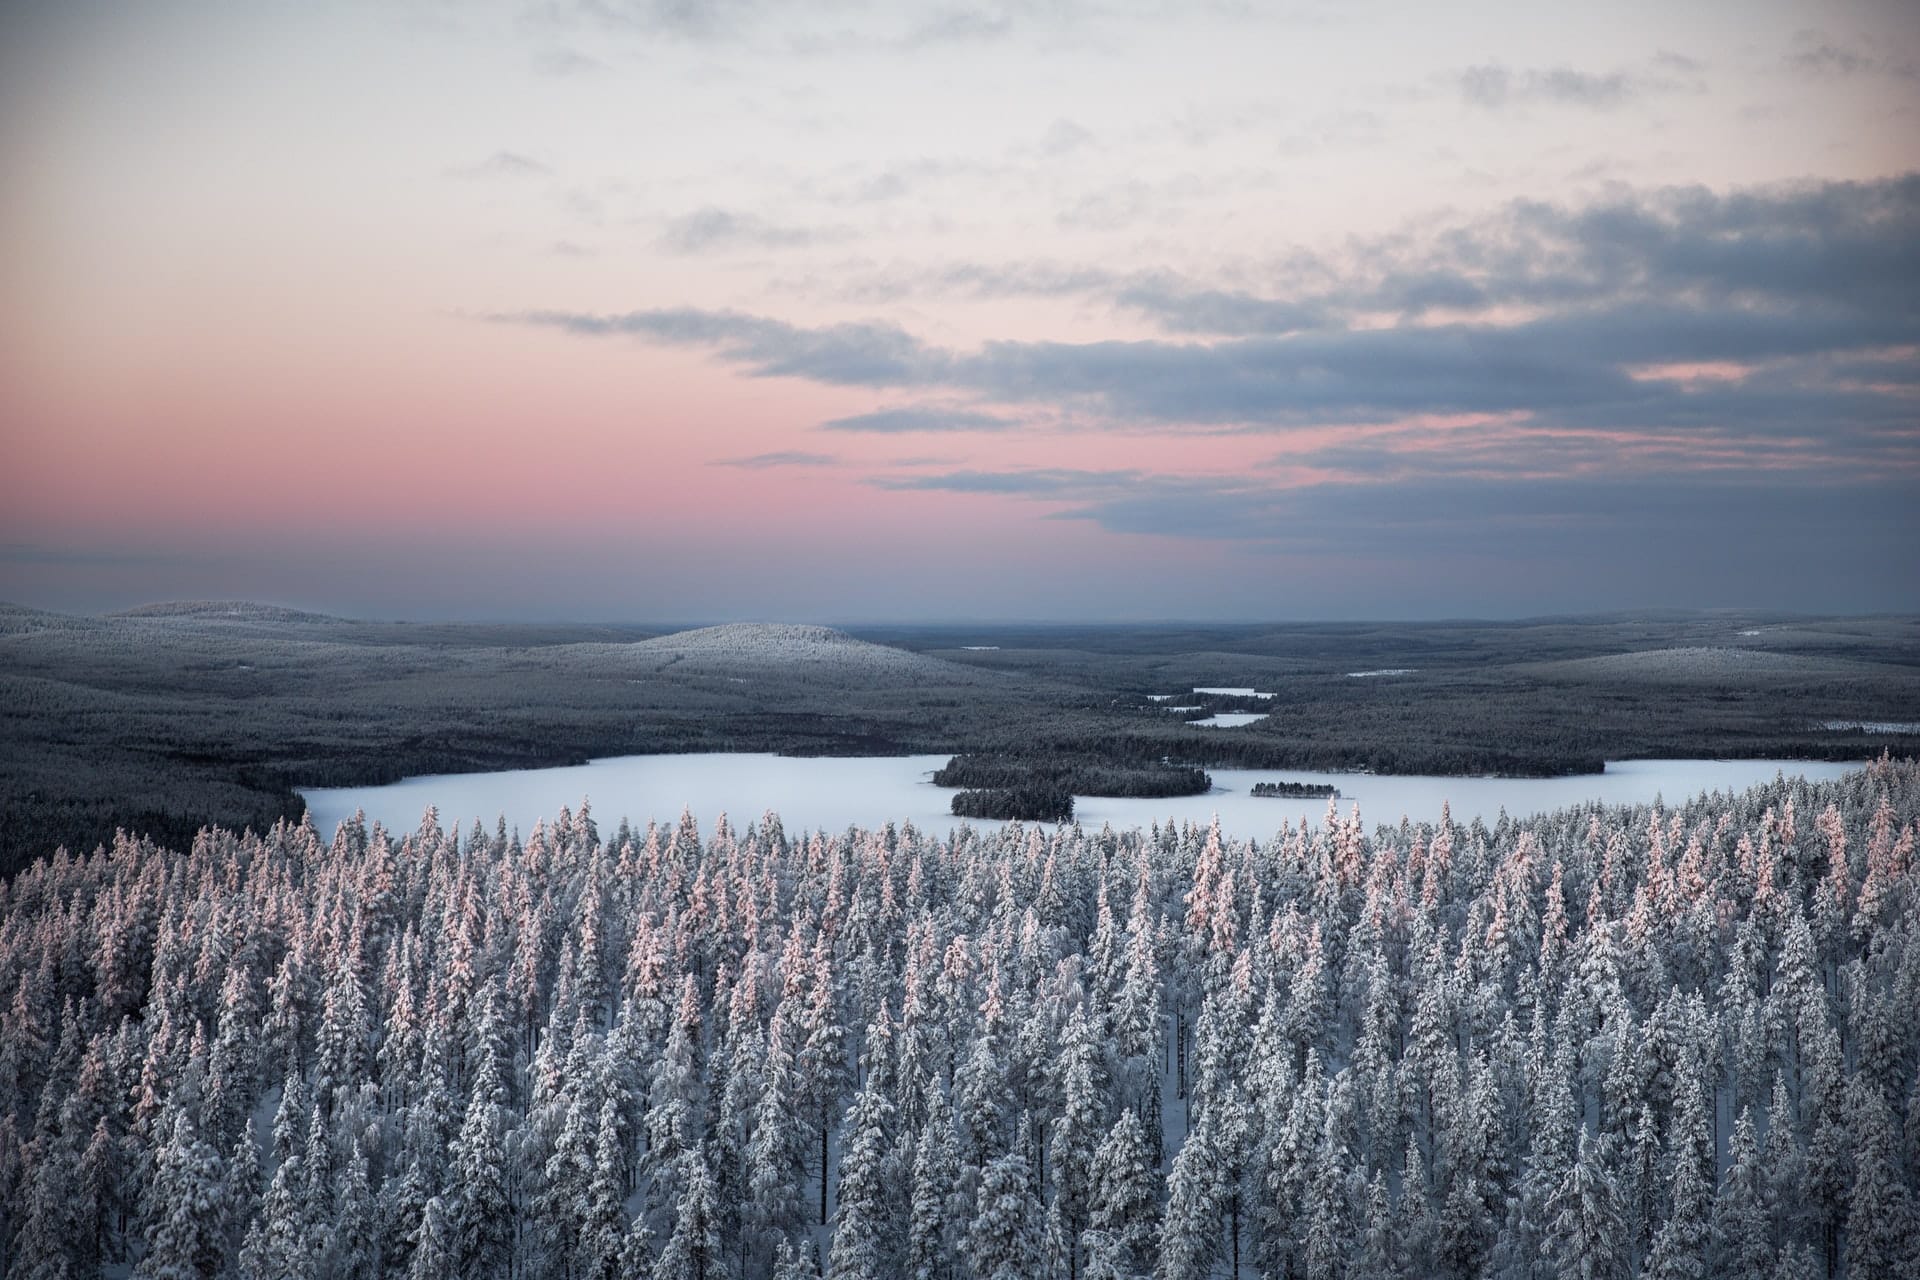 Laponija: 4 najpopularnijih i najzanimljivijih mjesta